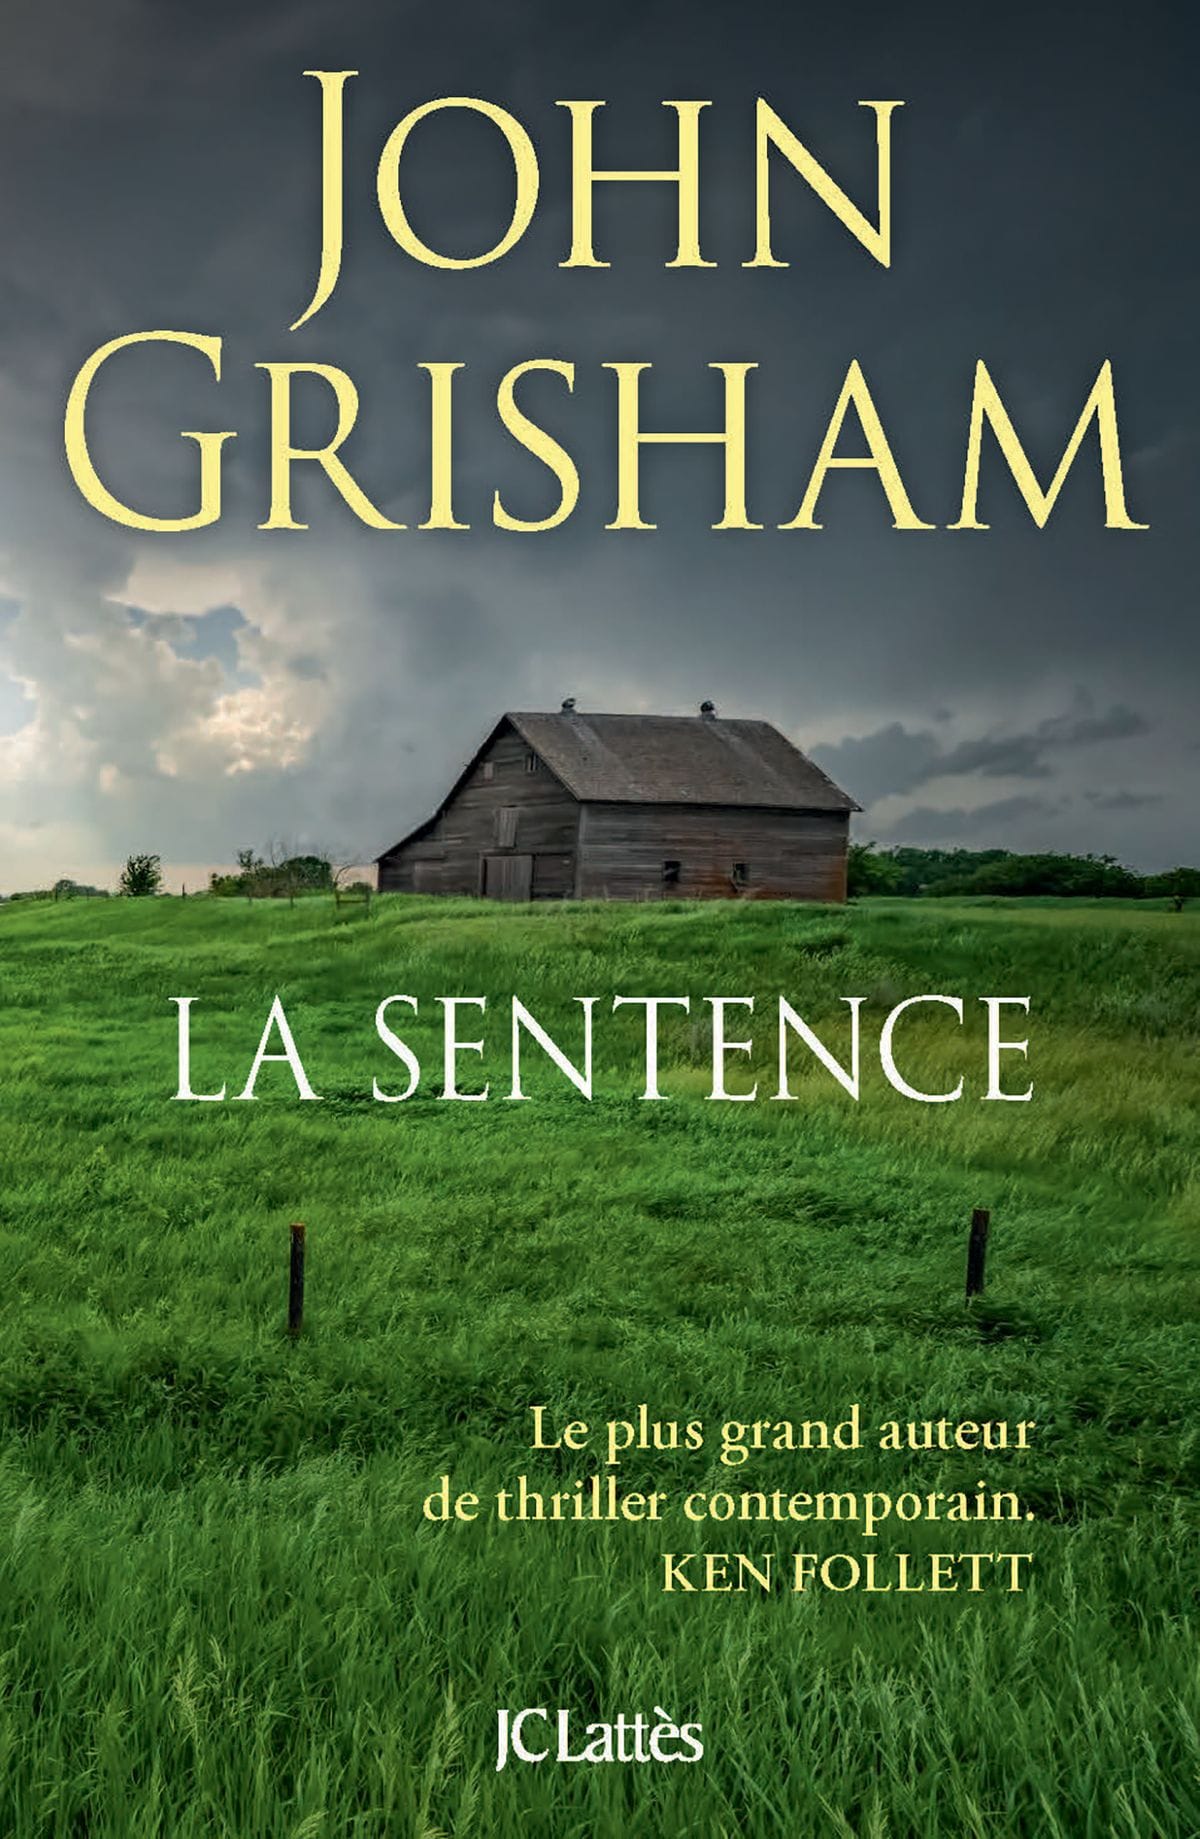 La sentence de John Grisham image couverture livre thriller